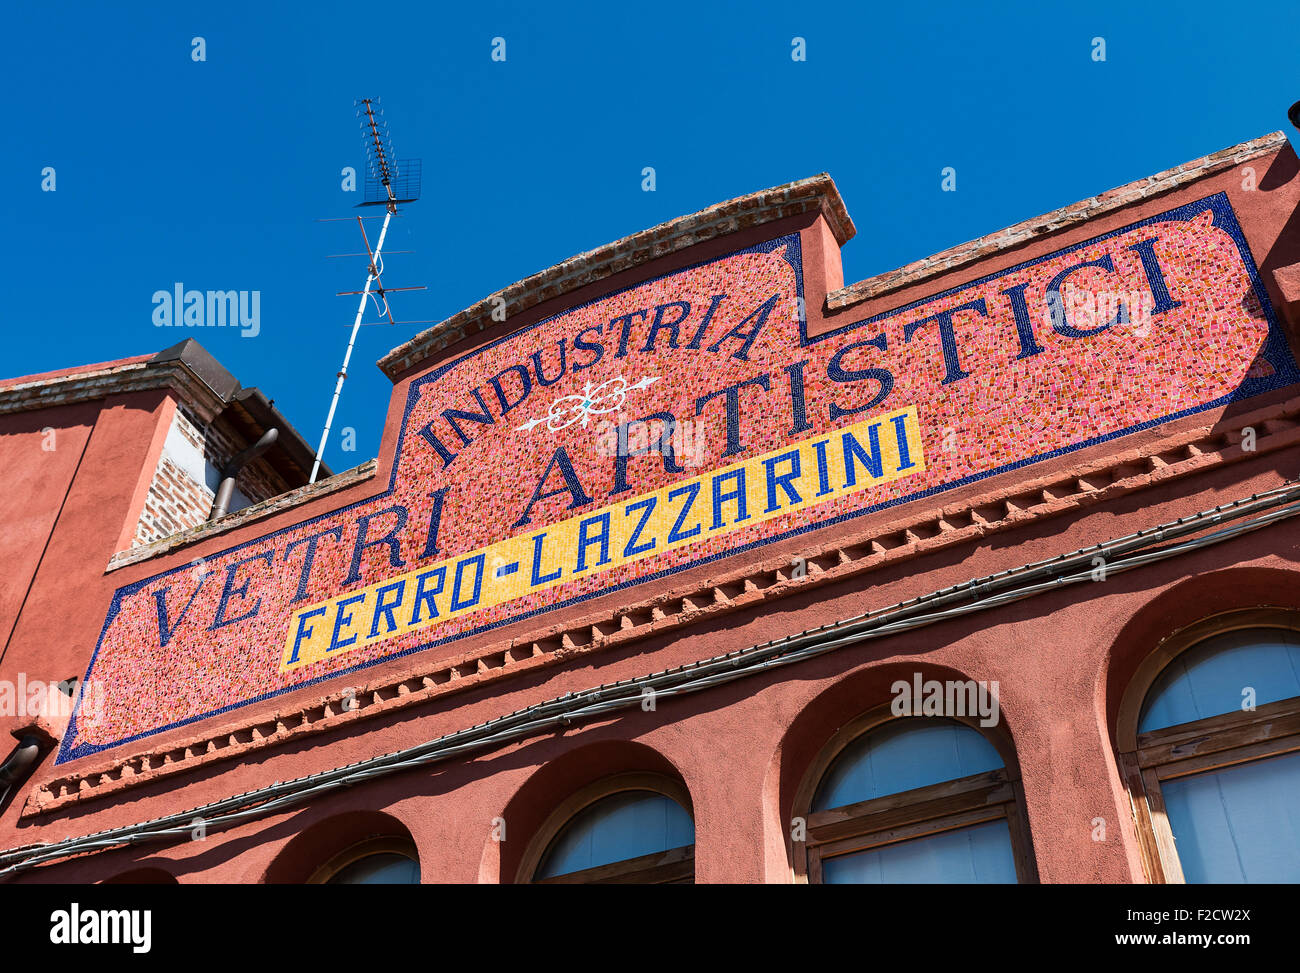 Venezianischen Insel Murano, Italien. Bekannt für seine vielen Öfen und handgemachte Glas. Stockfoto